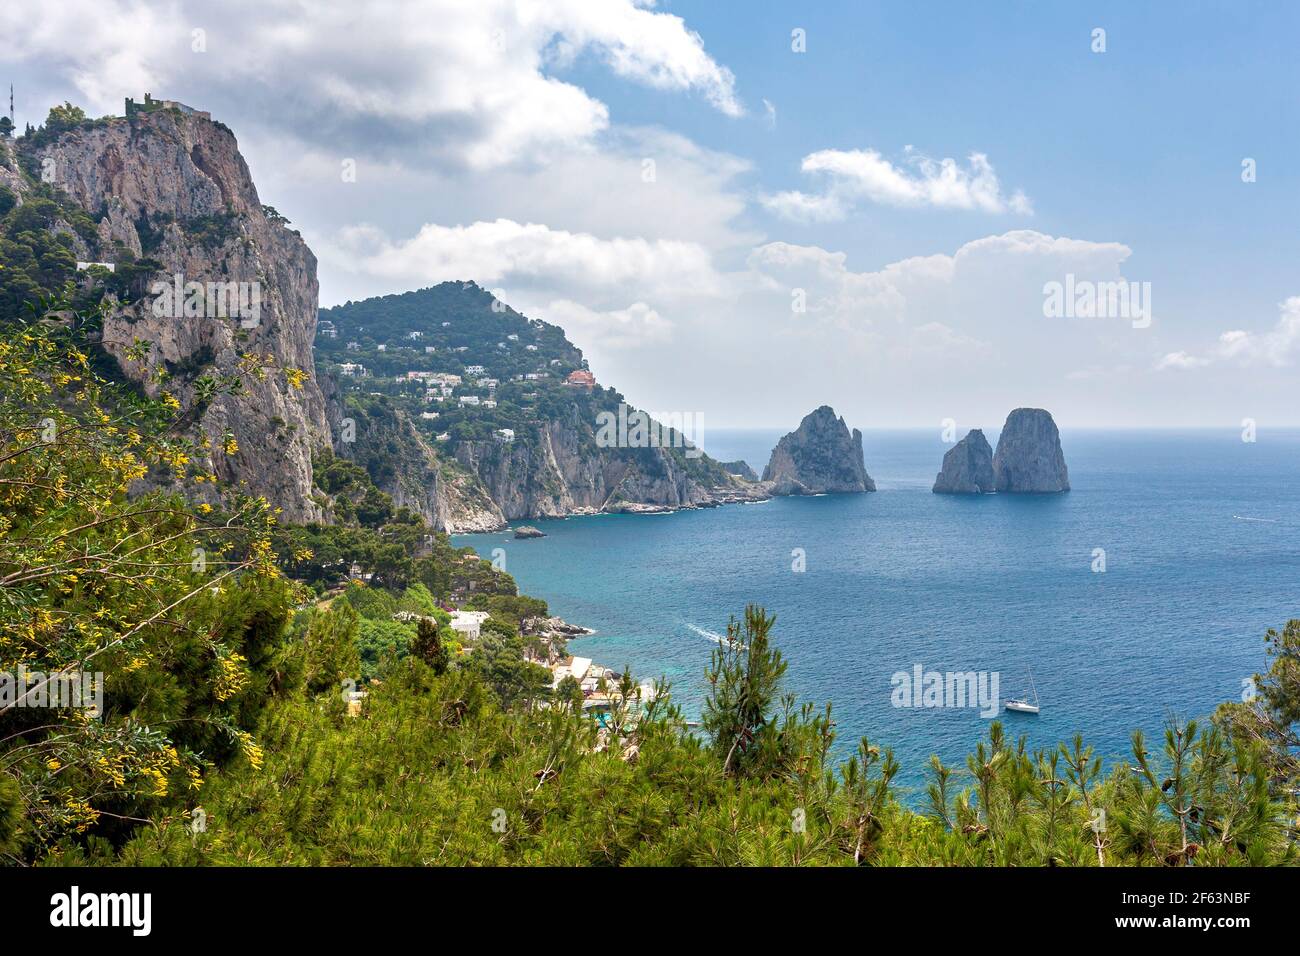 View over island of Capri with the 3 sea stacks - Stella, Faraglioni di Mezzo and Faraglione di Fuor, in the bay of Naples, Campania, Italy Stock Photo